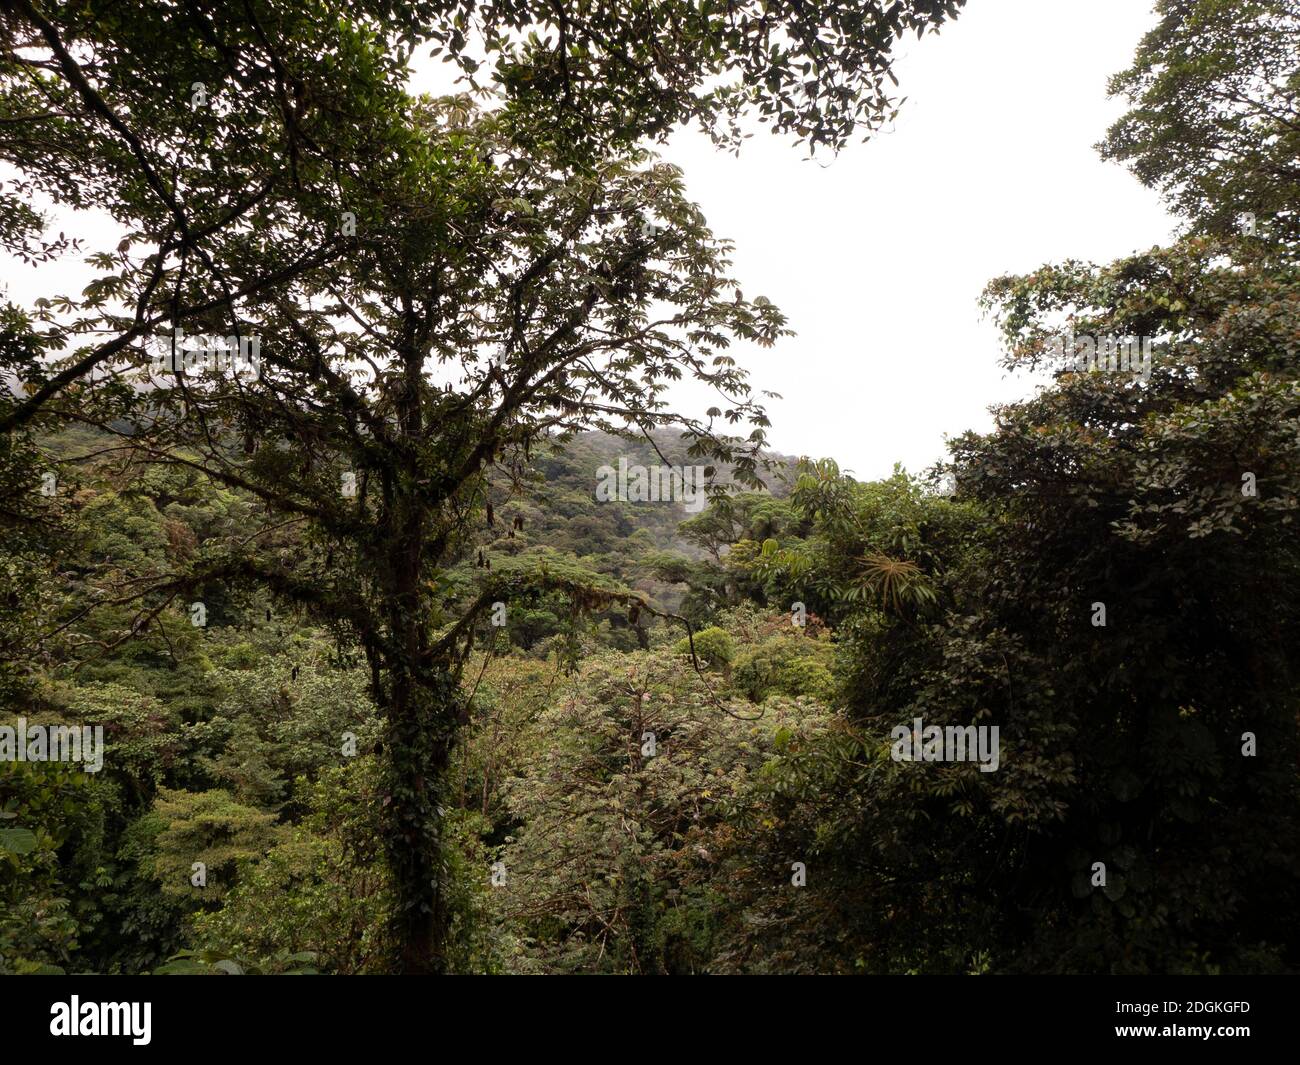 Wanderung durch den Regenwald in Costa Rica. Die Bäume streben gegen das Licht und sind sehr groß geworden. Epiphyten überwachsen jeden Baum. Stockfoto